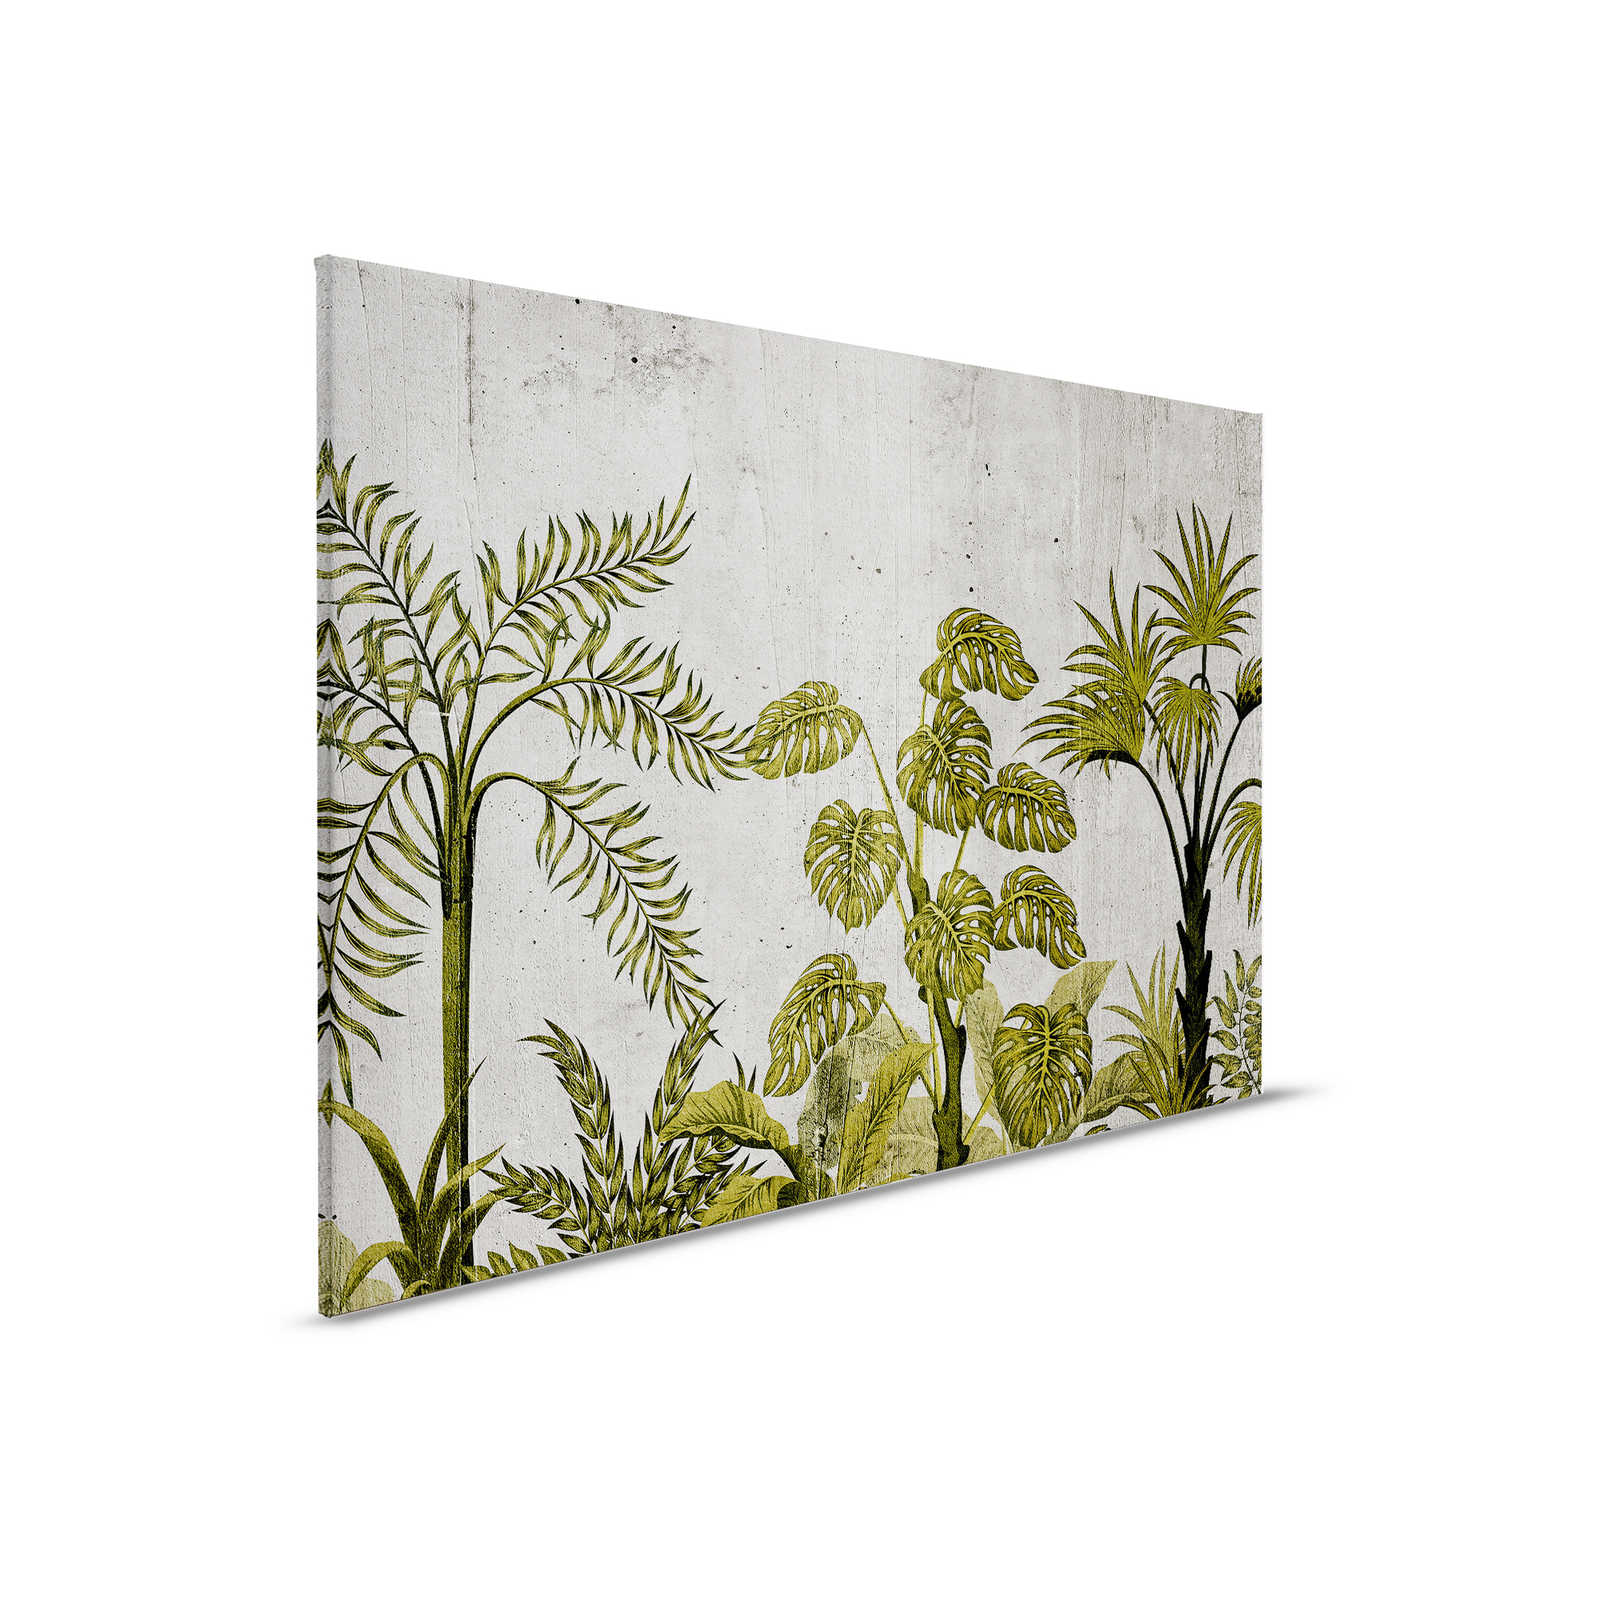 Leinwandbild mit Dschungelmotiv auf Beton Hintergrund – 0,90 m x 0,60 m
